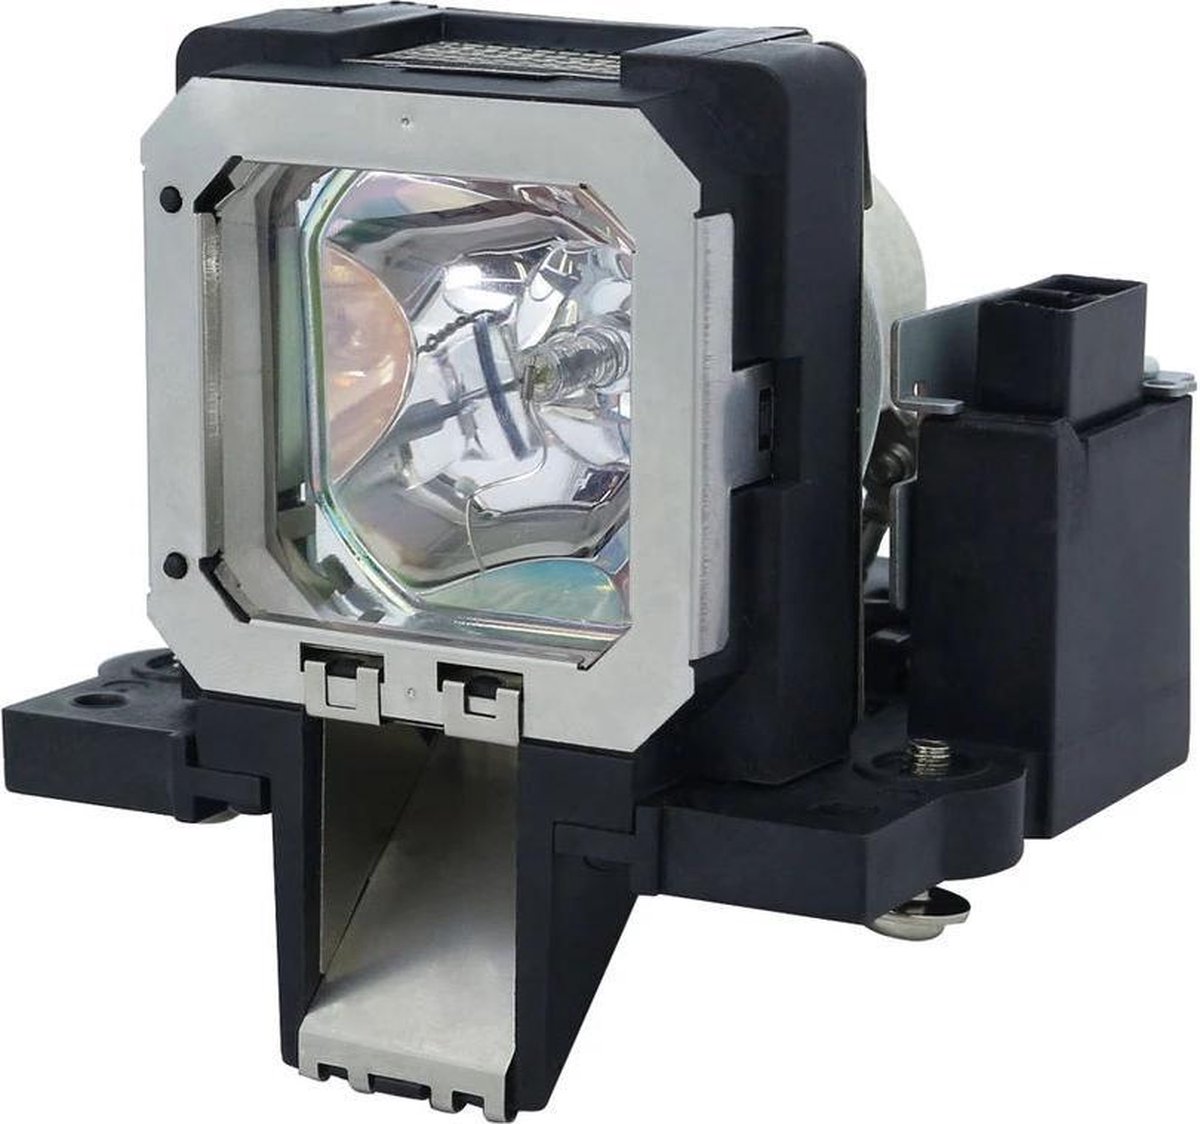 Beamerlamp geschikt voor de JVC DLA-RS55U beamer, lamp code PK-L2210UP. Bevat originele NSHA lamp, prestaties gelijk aan origineel.